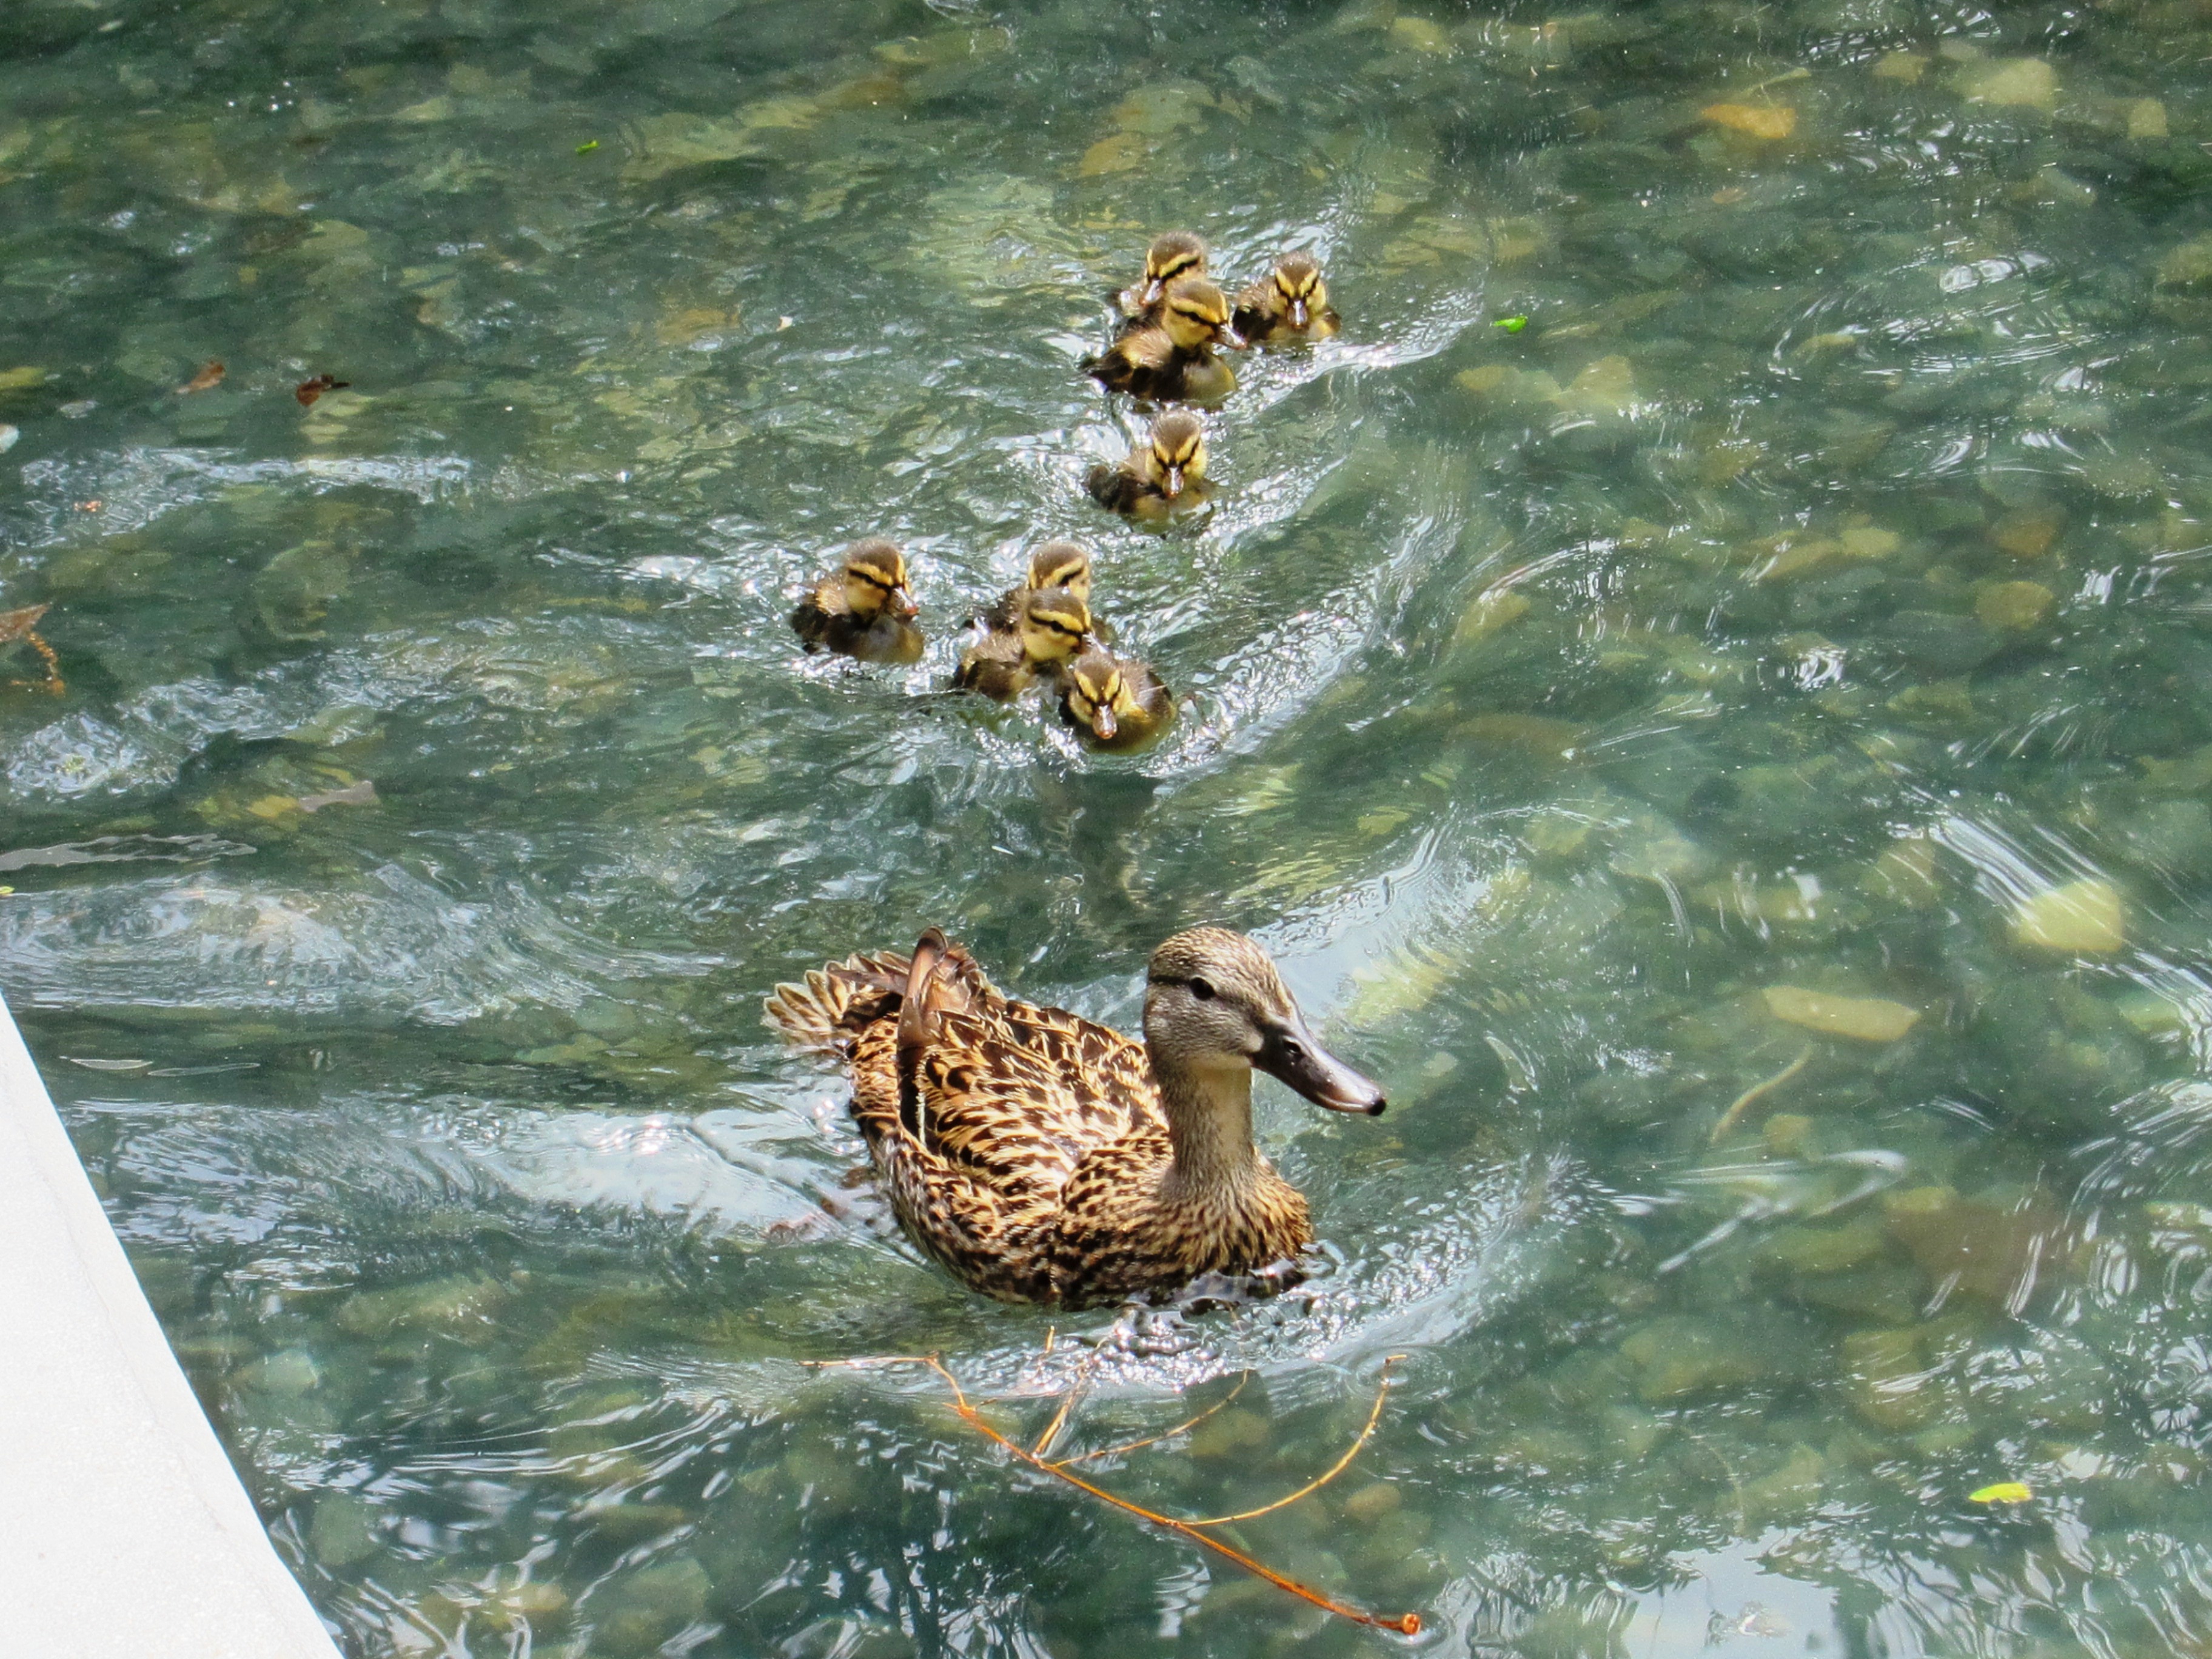 ducks swimming